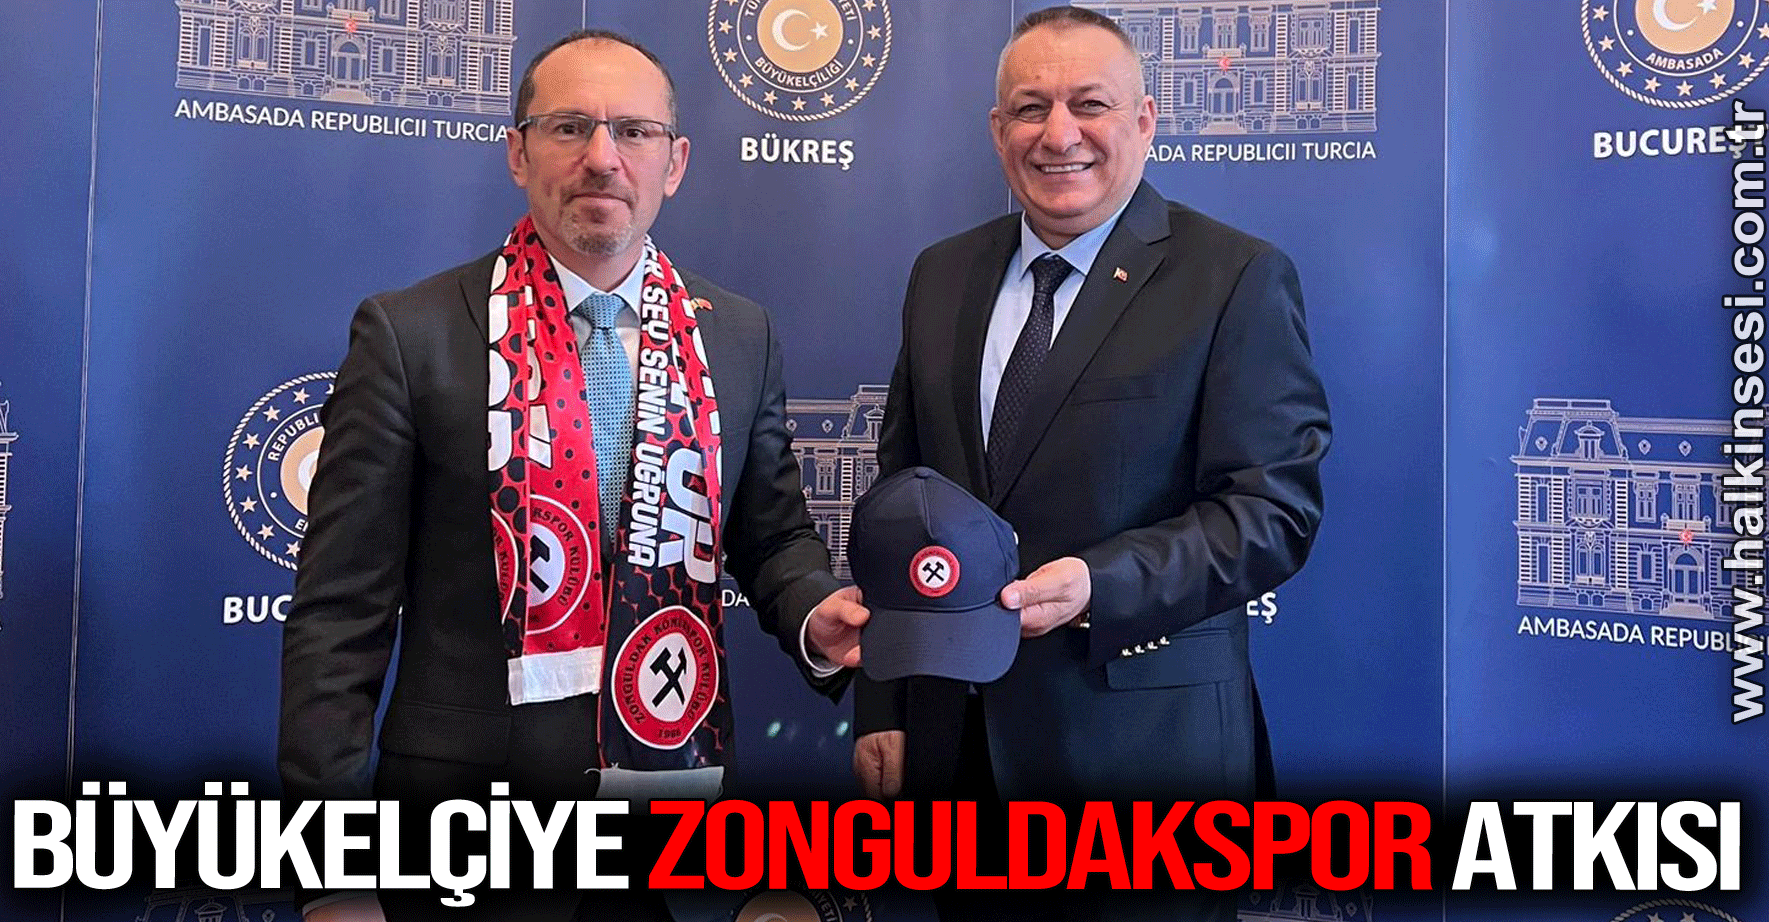 Büyükelçiye Zonguldakspor atkısı